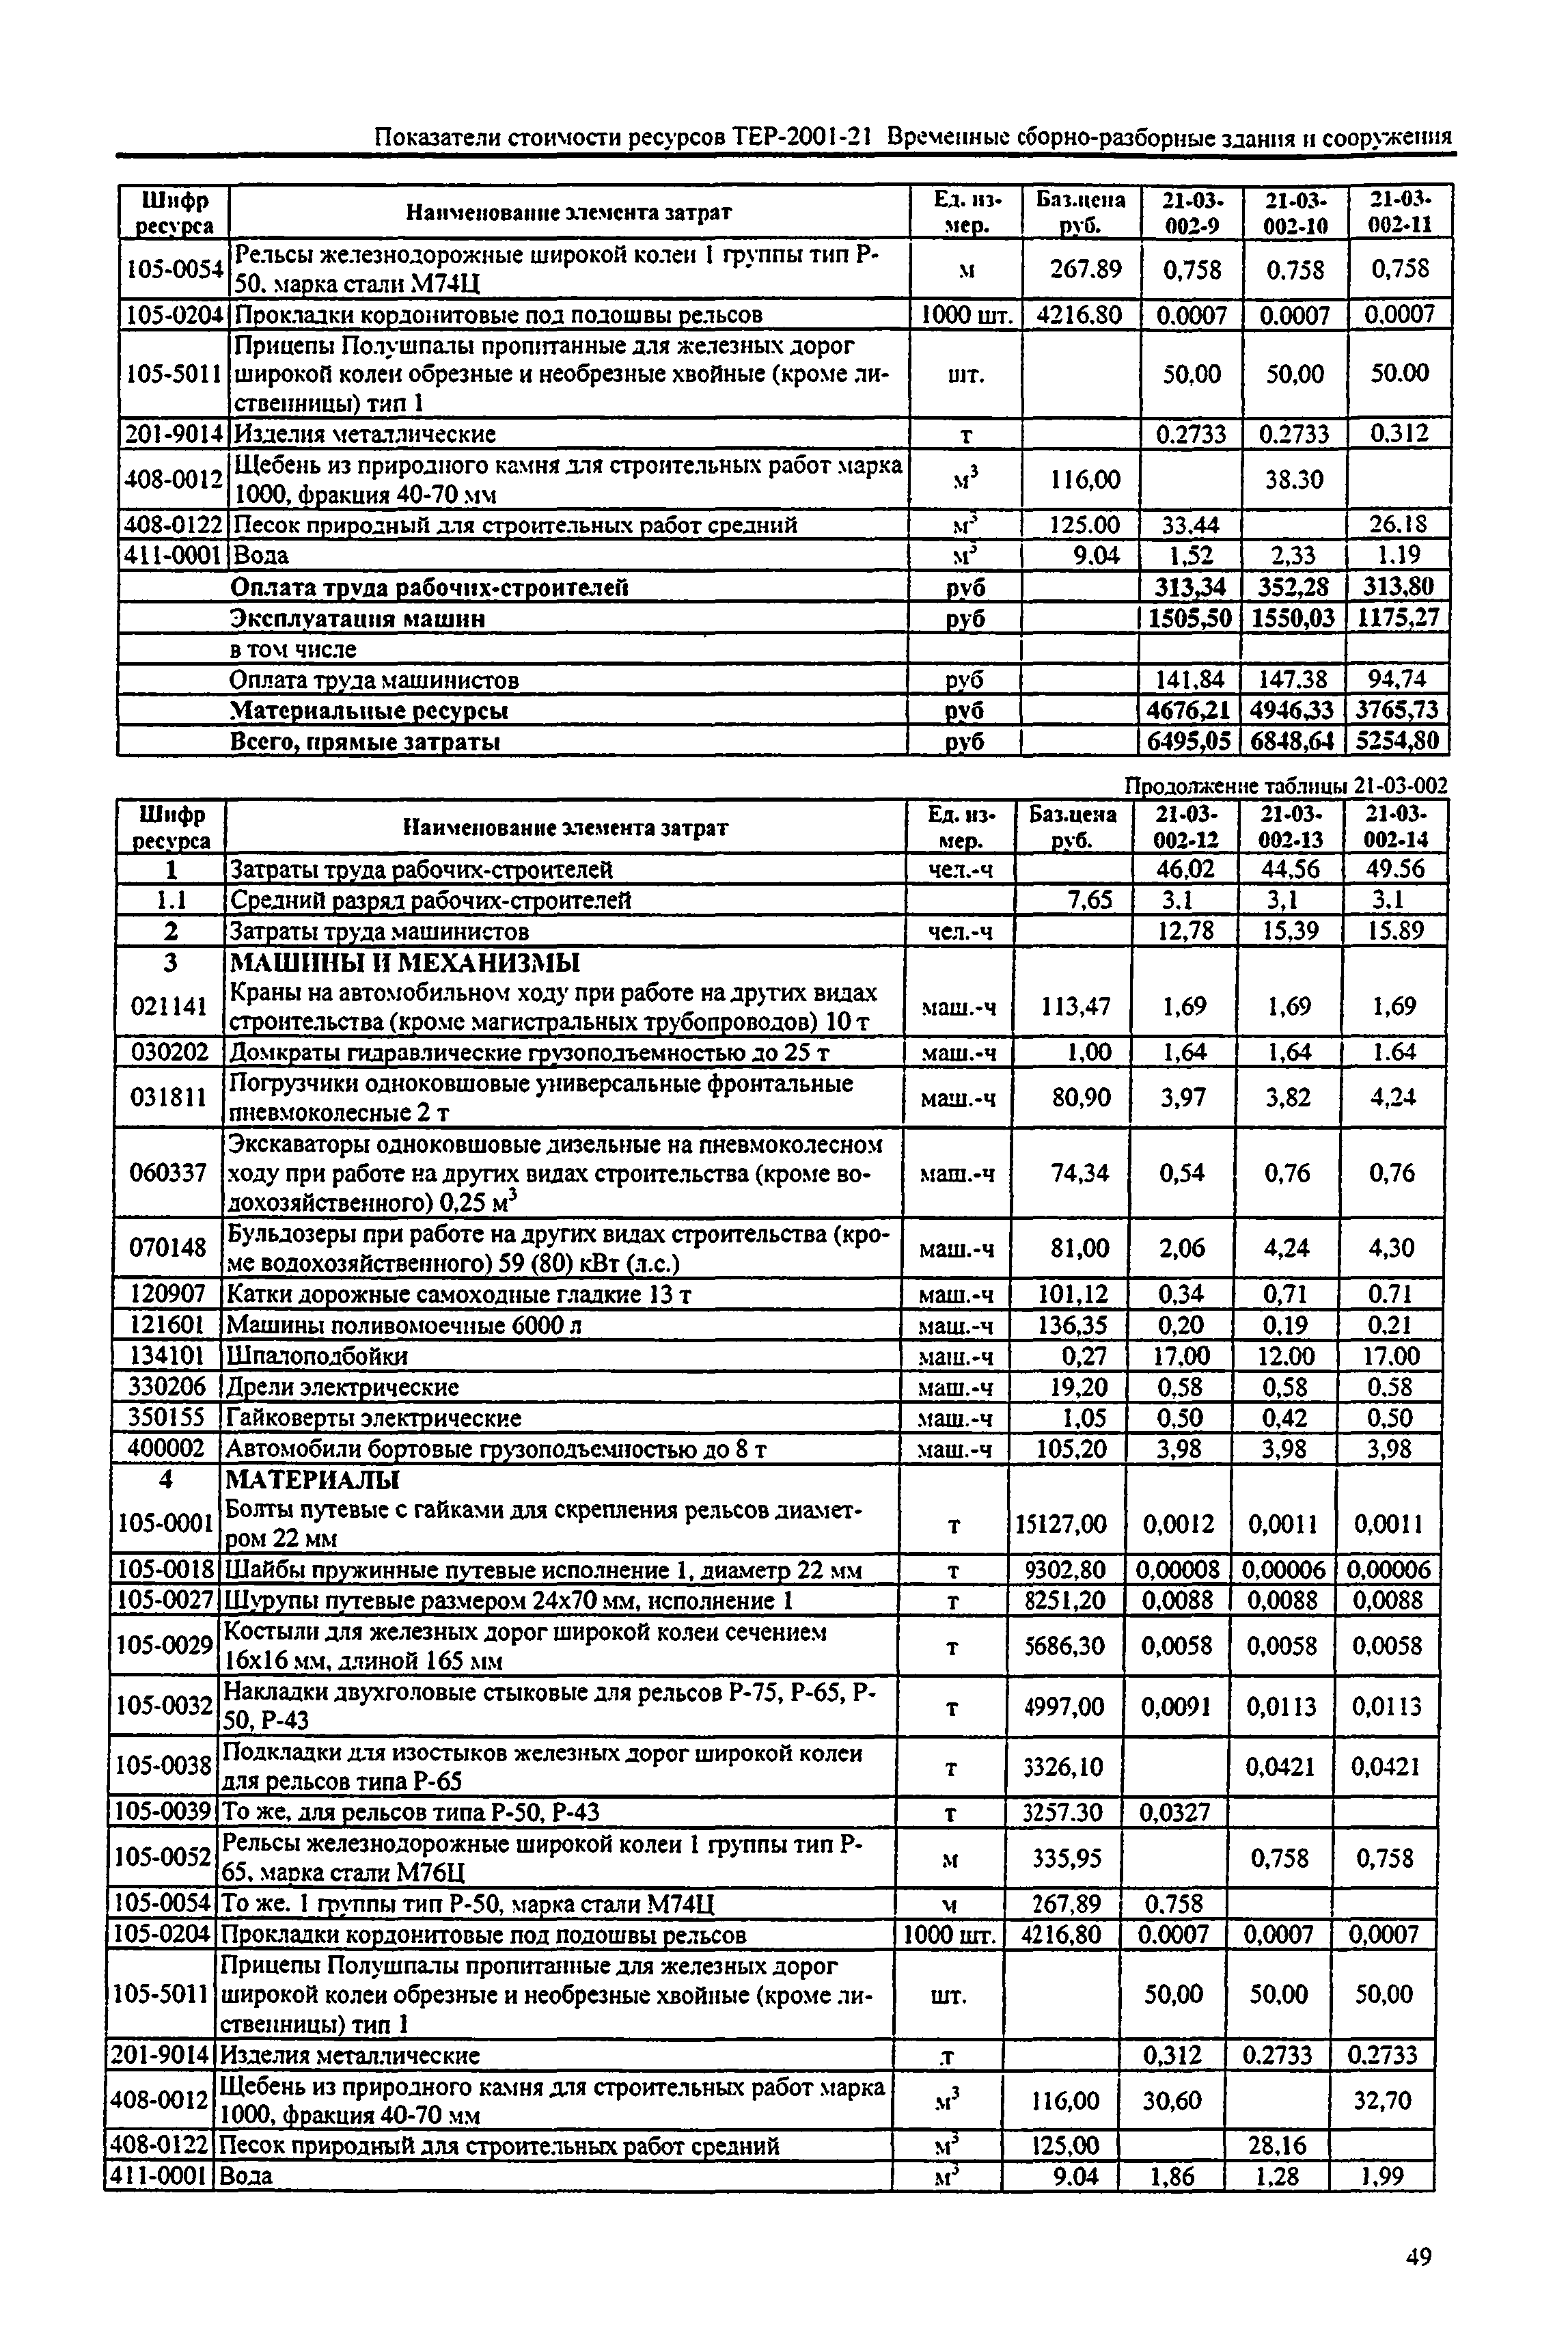 Справочное пособие к ТЕР 81-02-21-2001